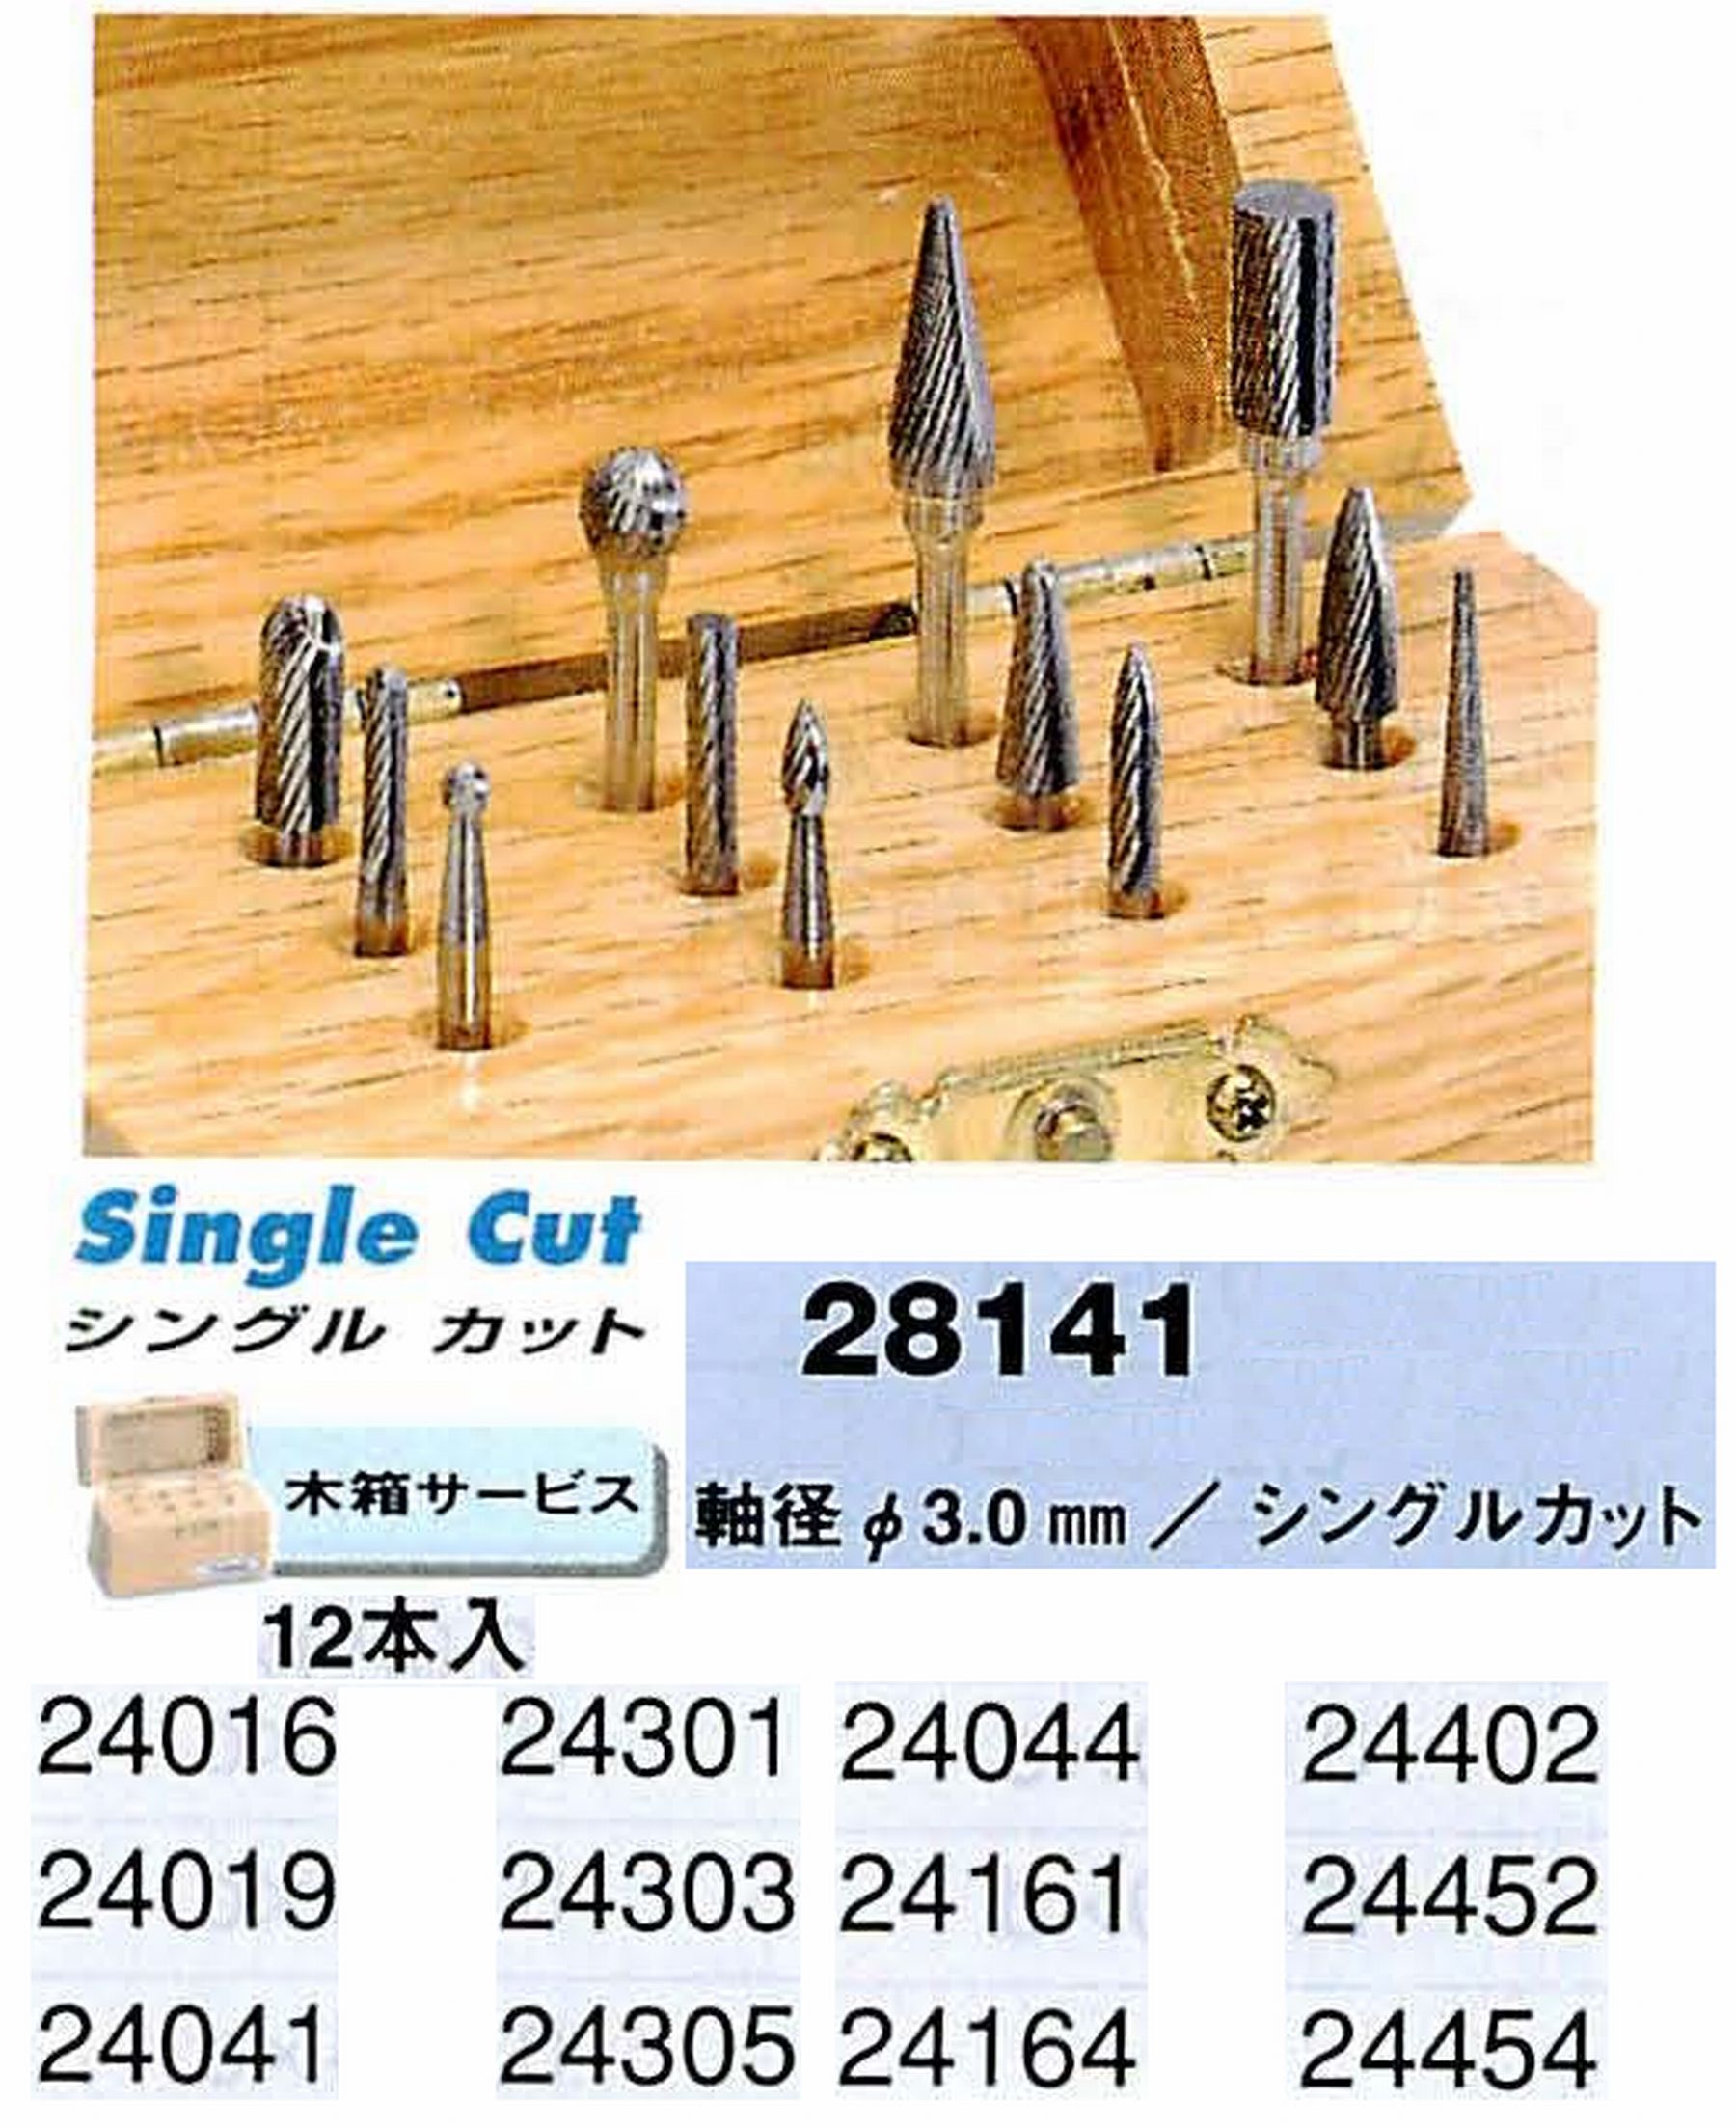 ナカニシ/NAKANISHI 超硬カッター アソートセット 軸径(シャンク)φ3.0mm 28141